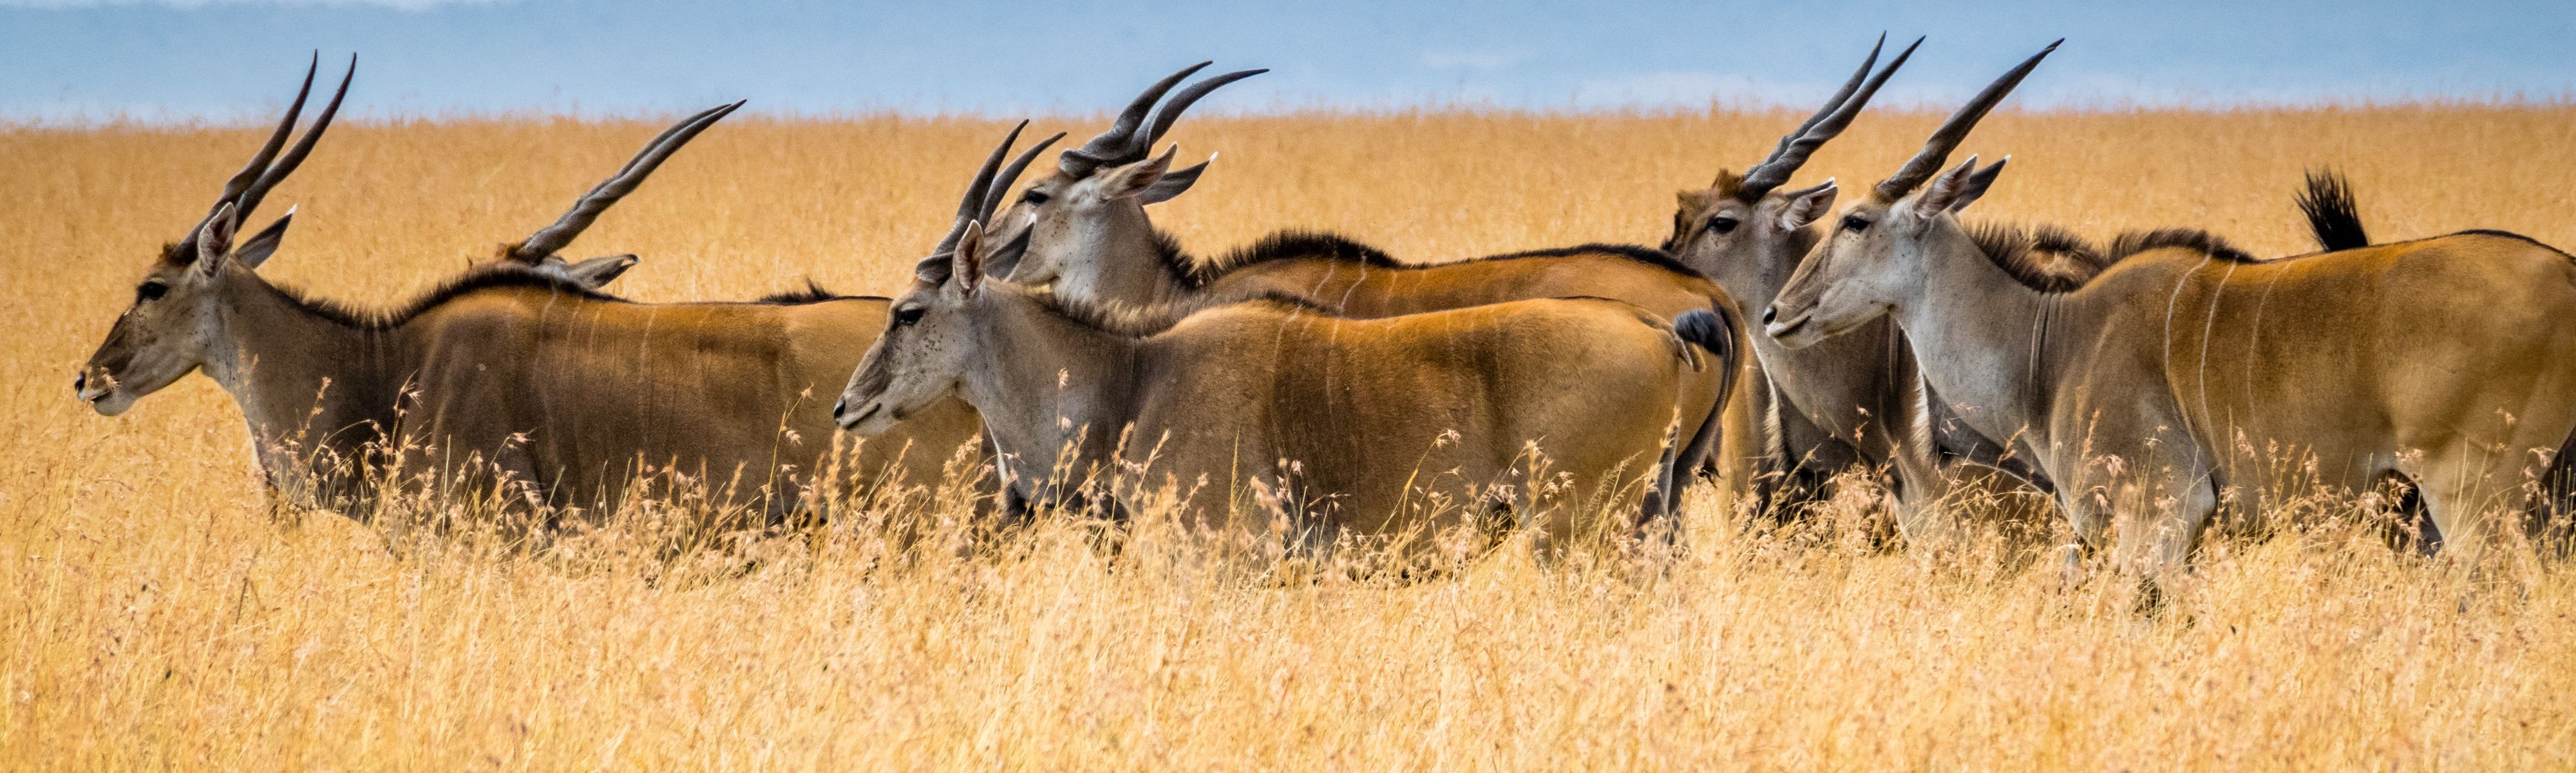 antelope walking through grass field in maasai mara in kenya africa